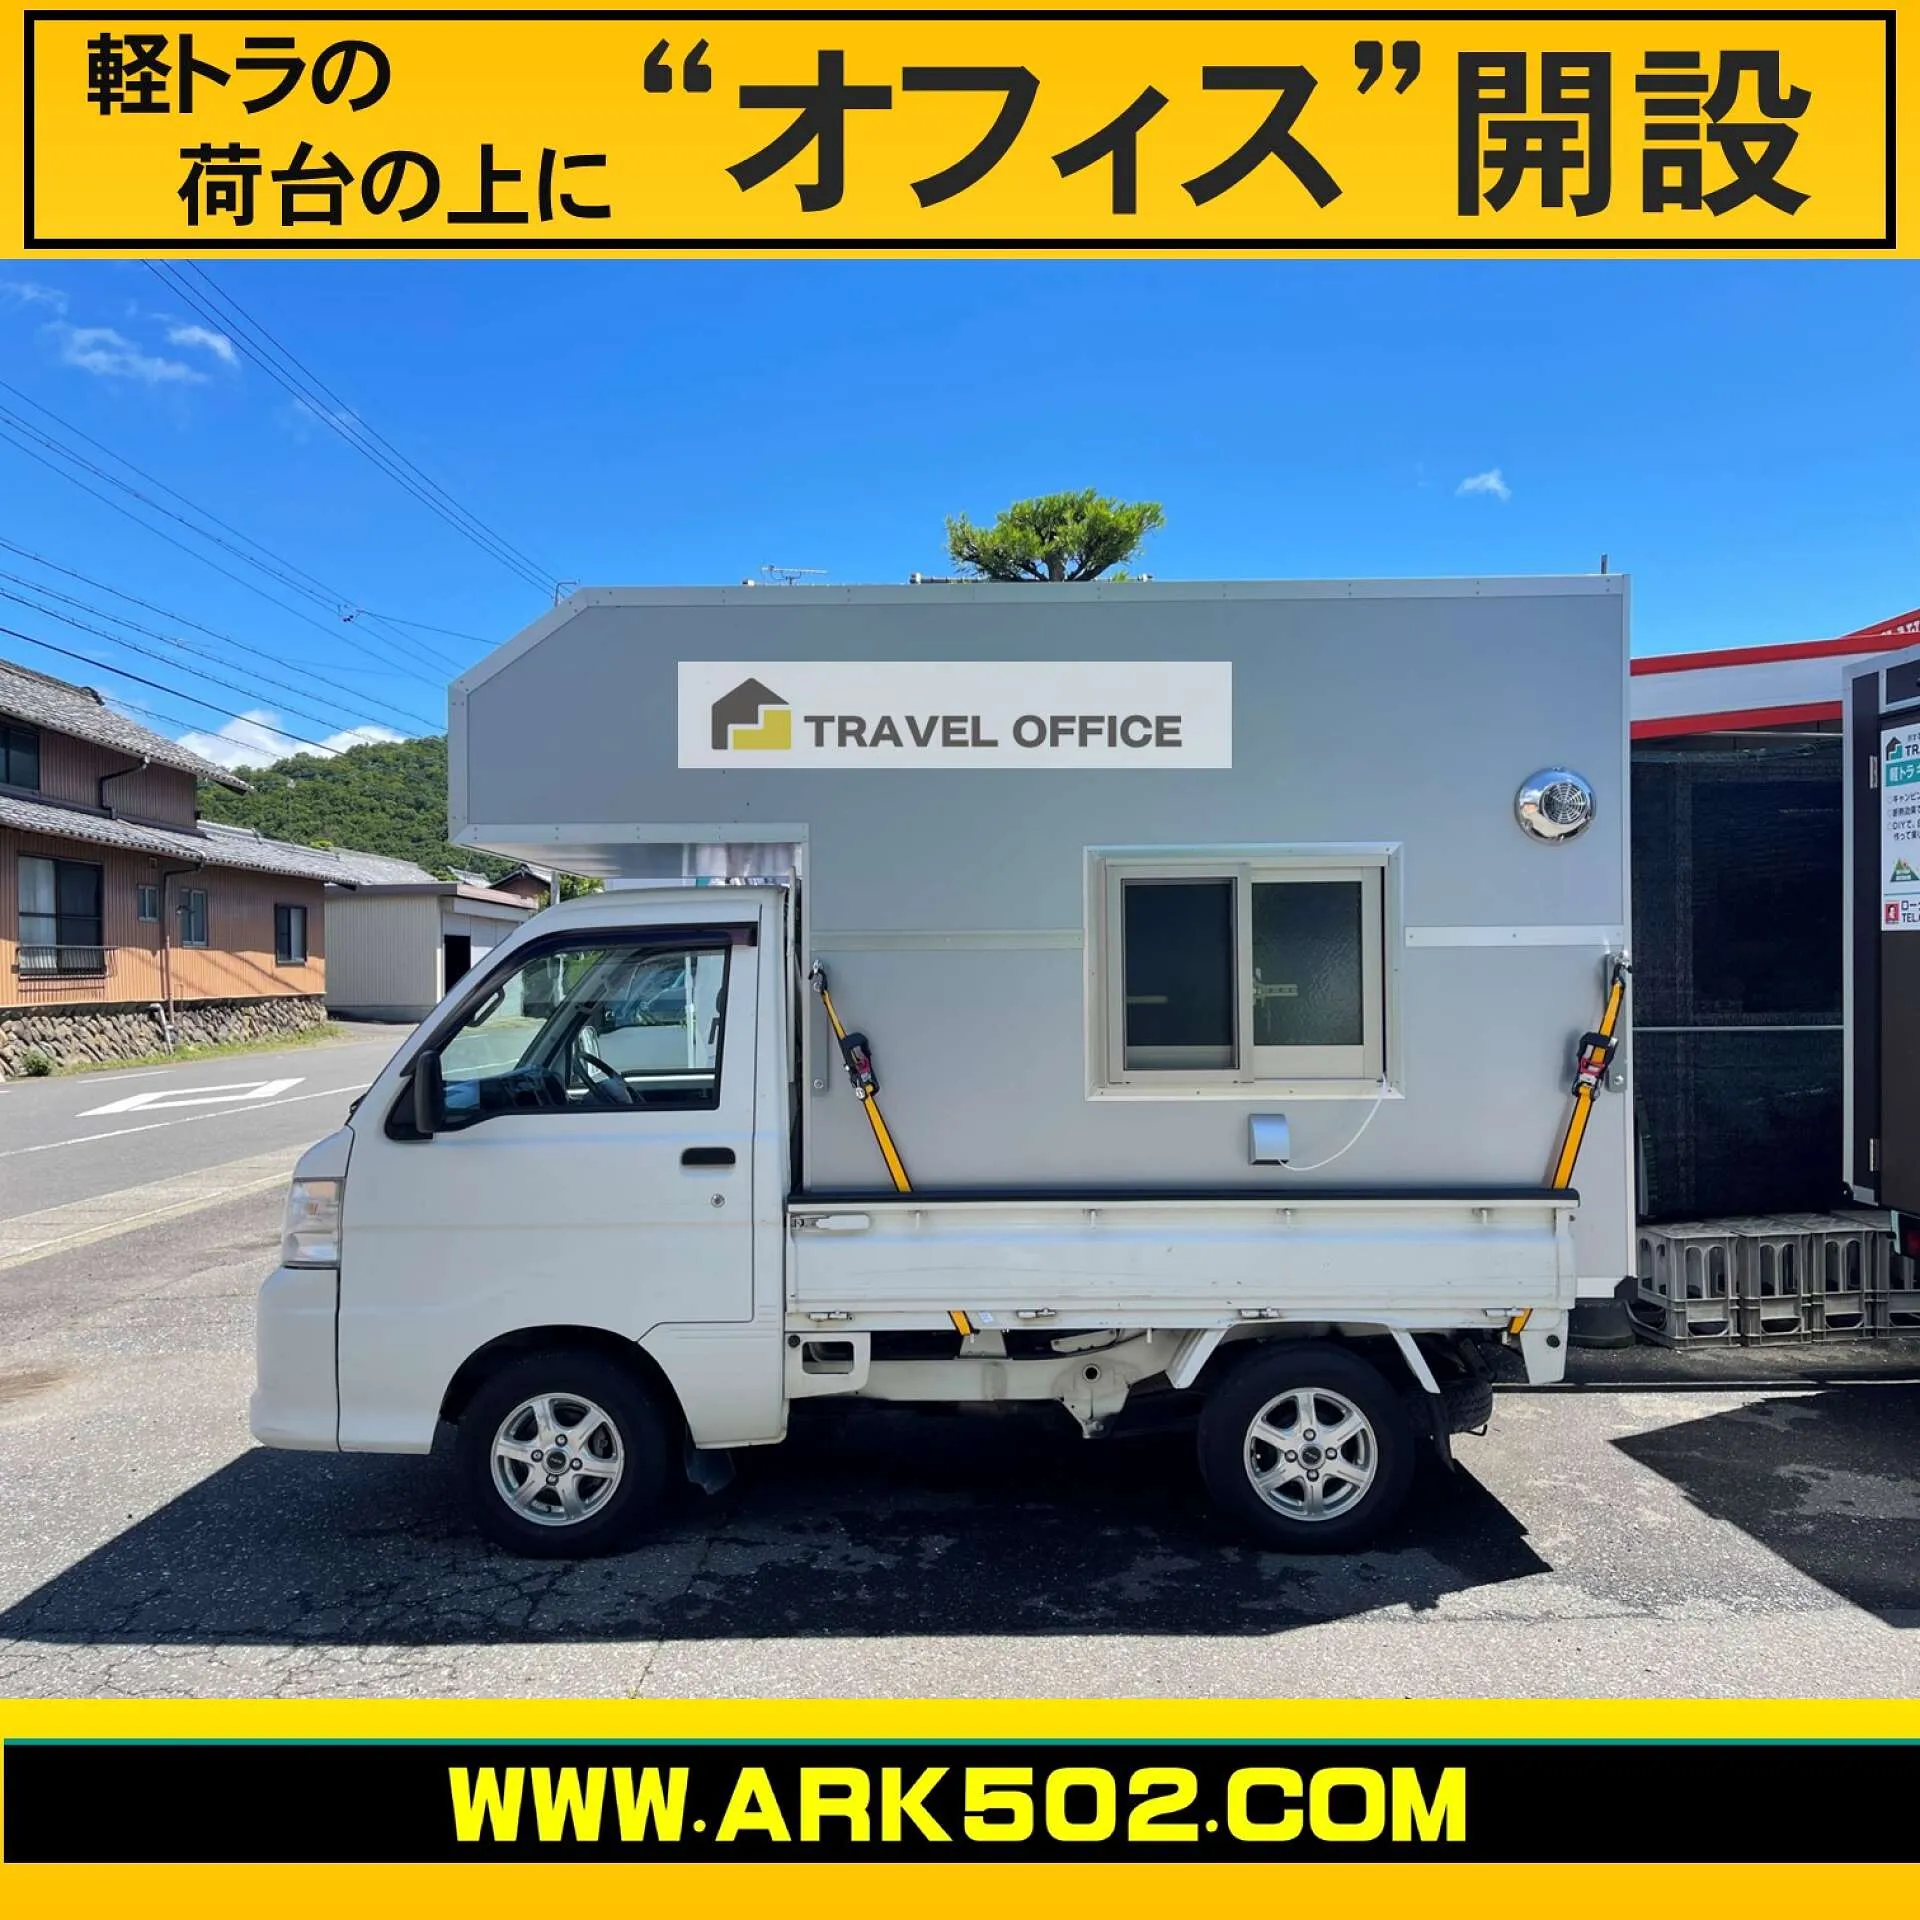 軽トラック用 キッチンカー キャンピングカー シェル - 国内自動車本体